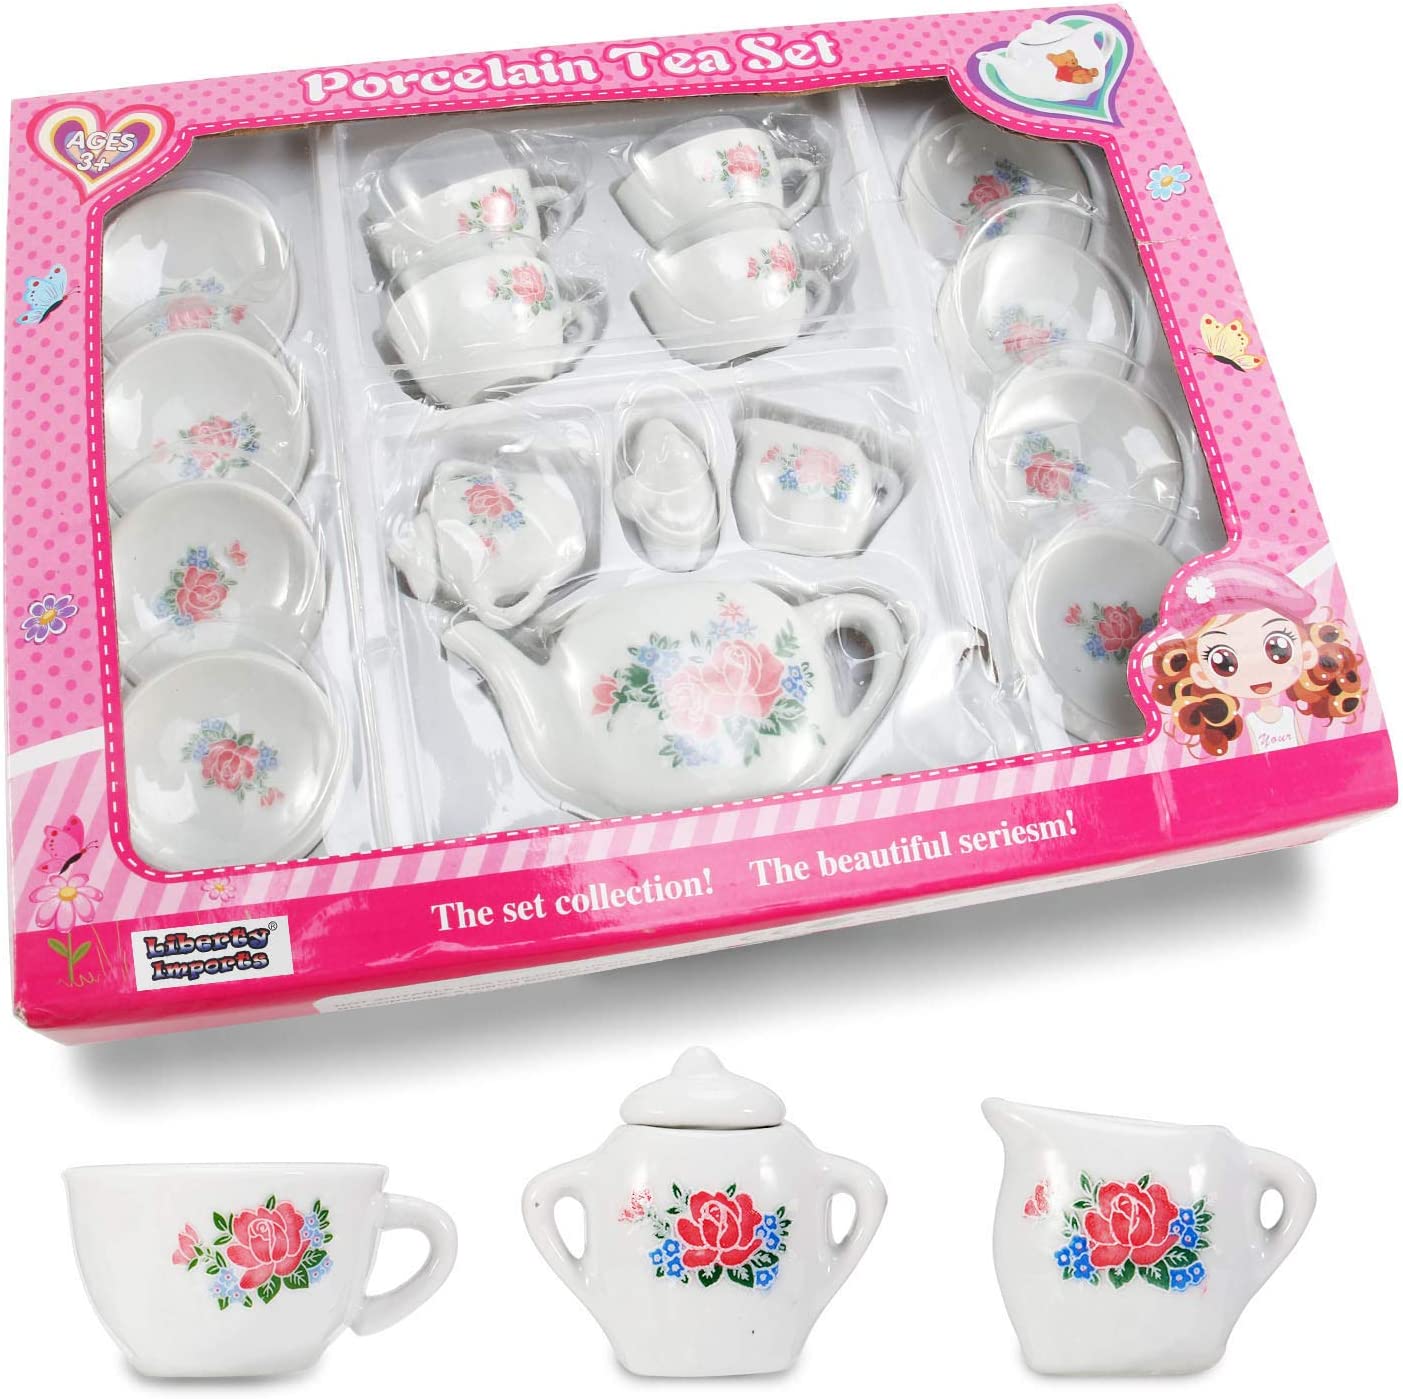 17 Piece Rose Flower Miniature Porcelain Ceramic Tea Set